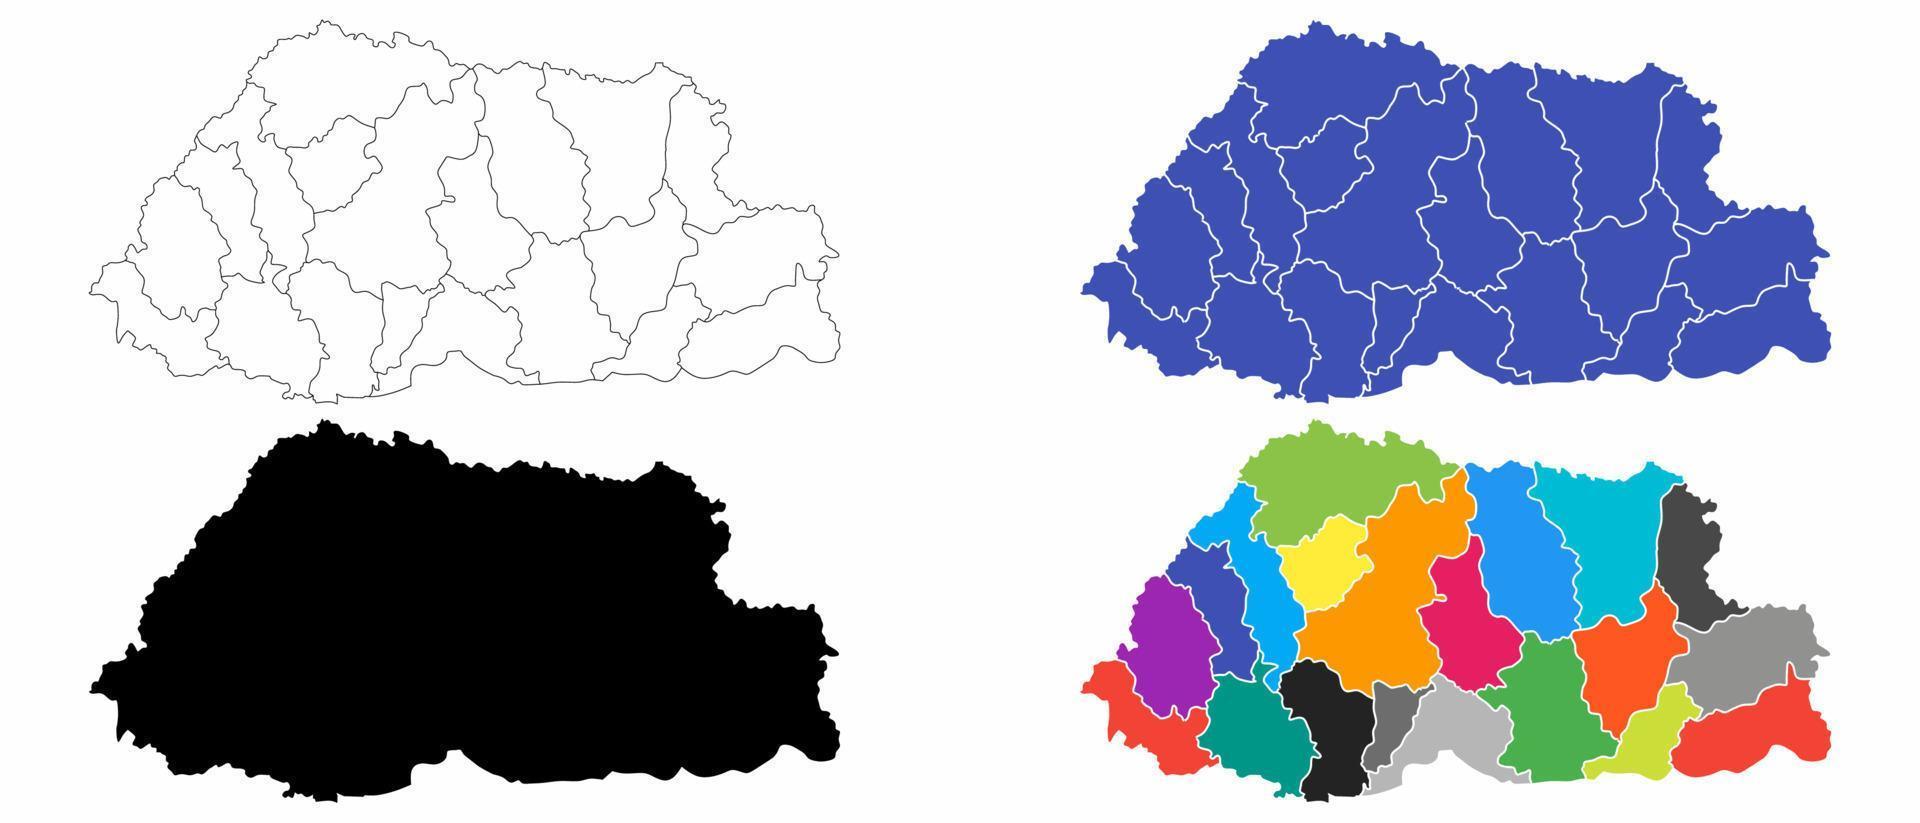 mapa político reino de bhutan.bhutaneses conjunto de mapas vector